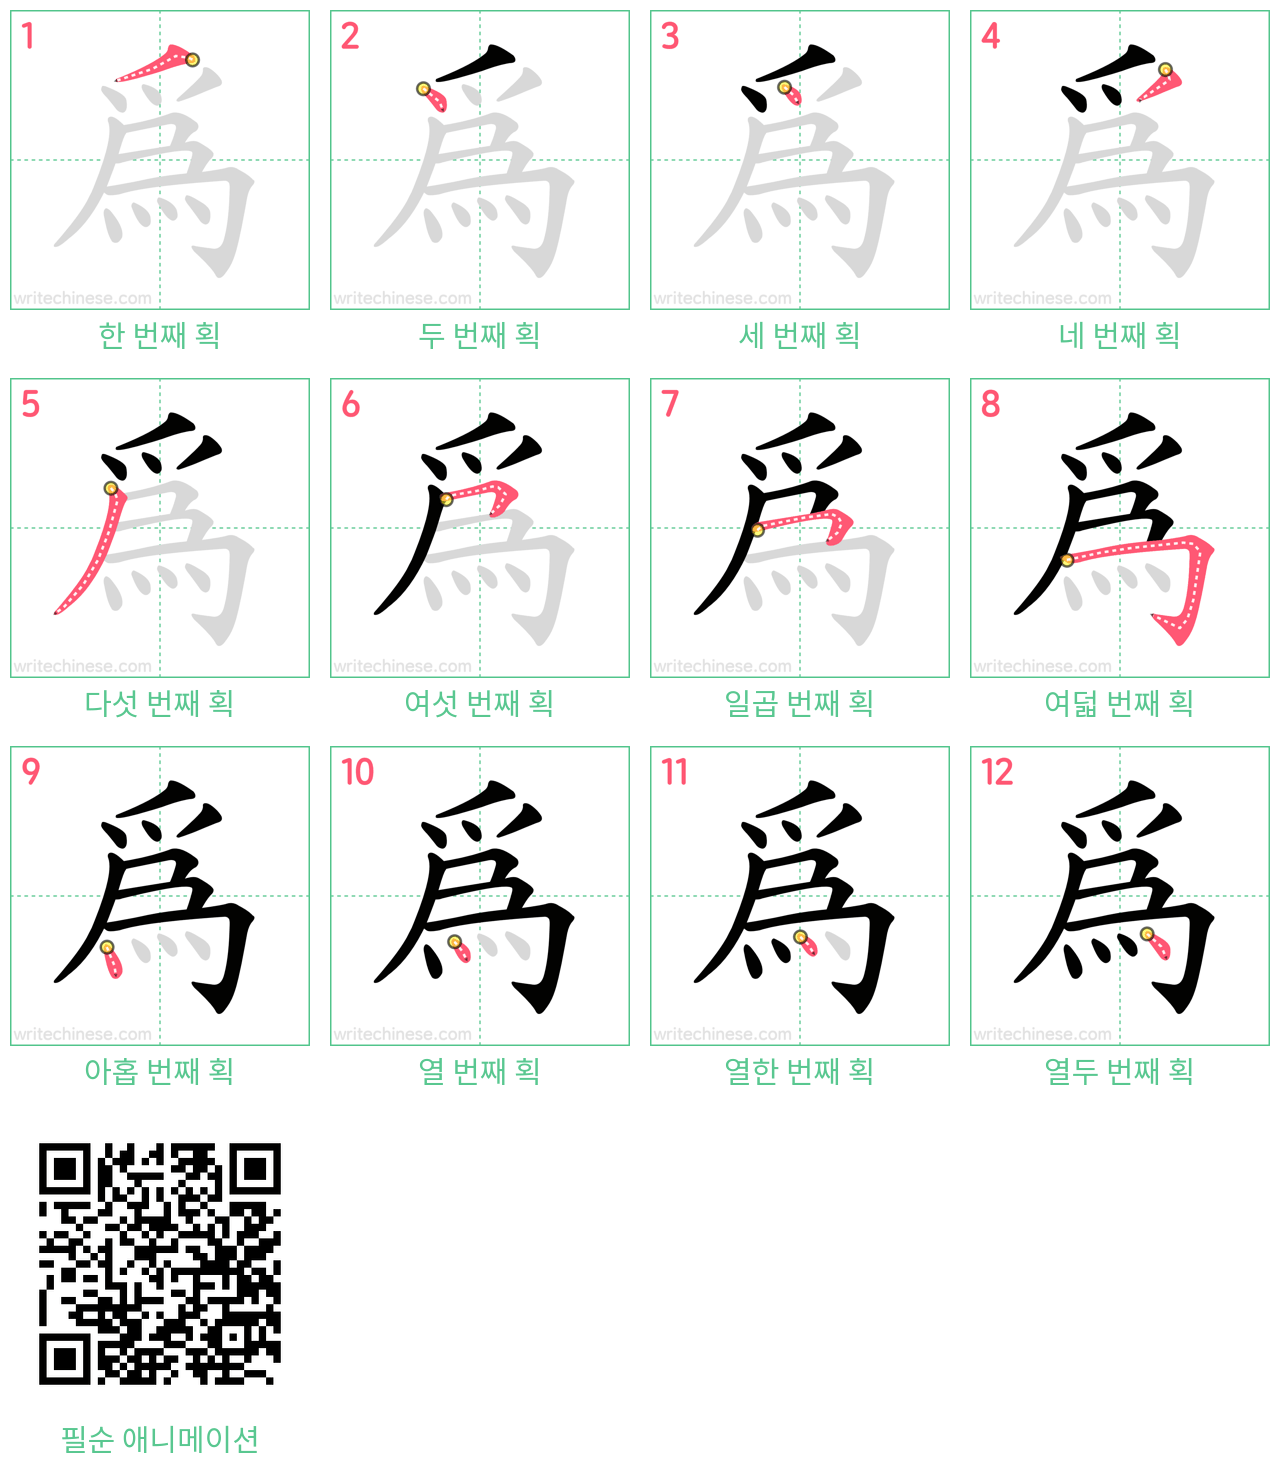 為 step-by-step stroke order diagrams